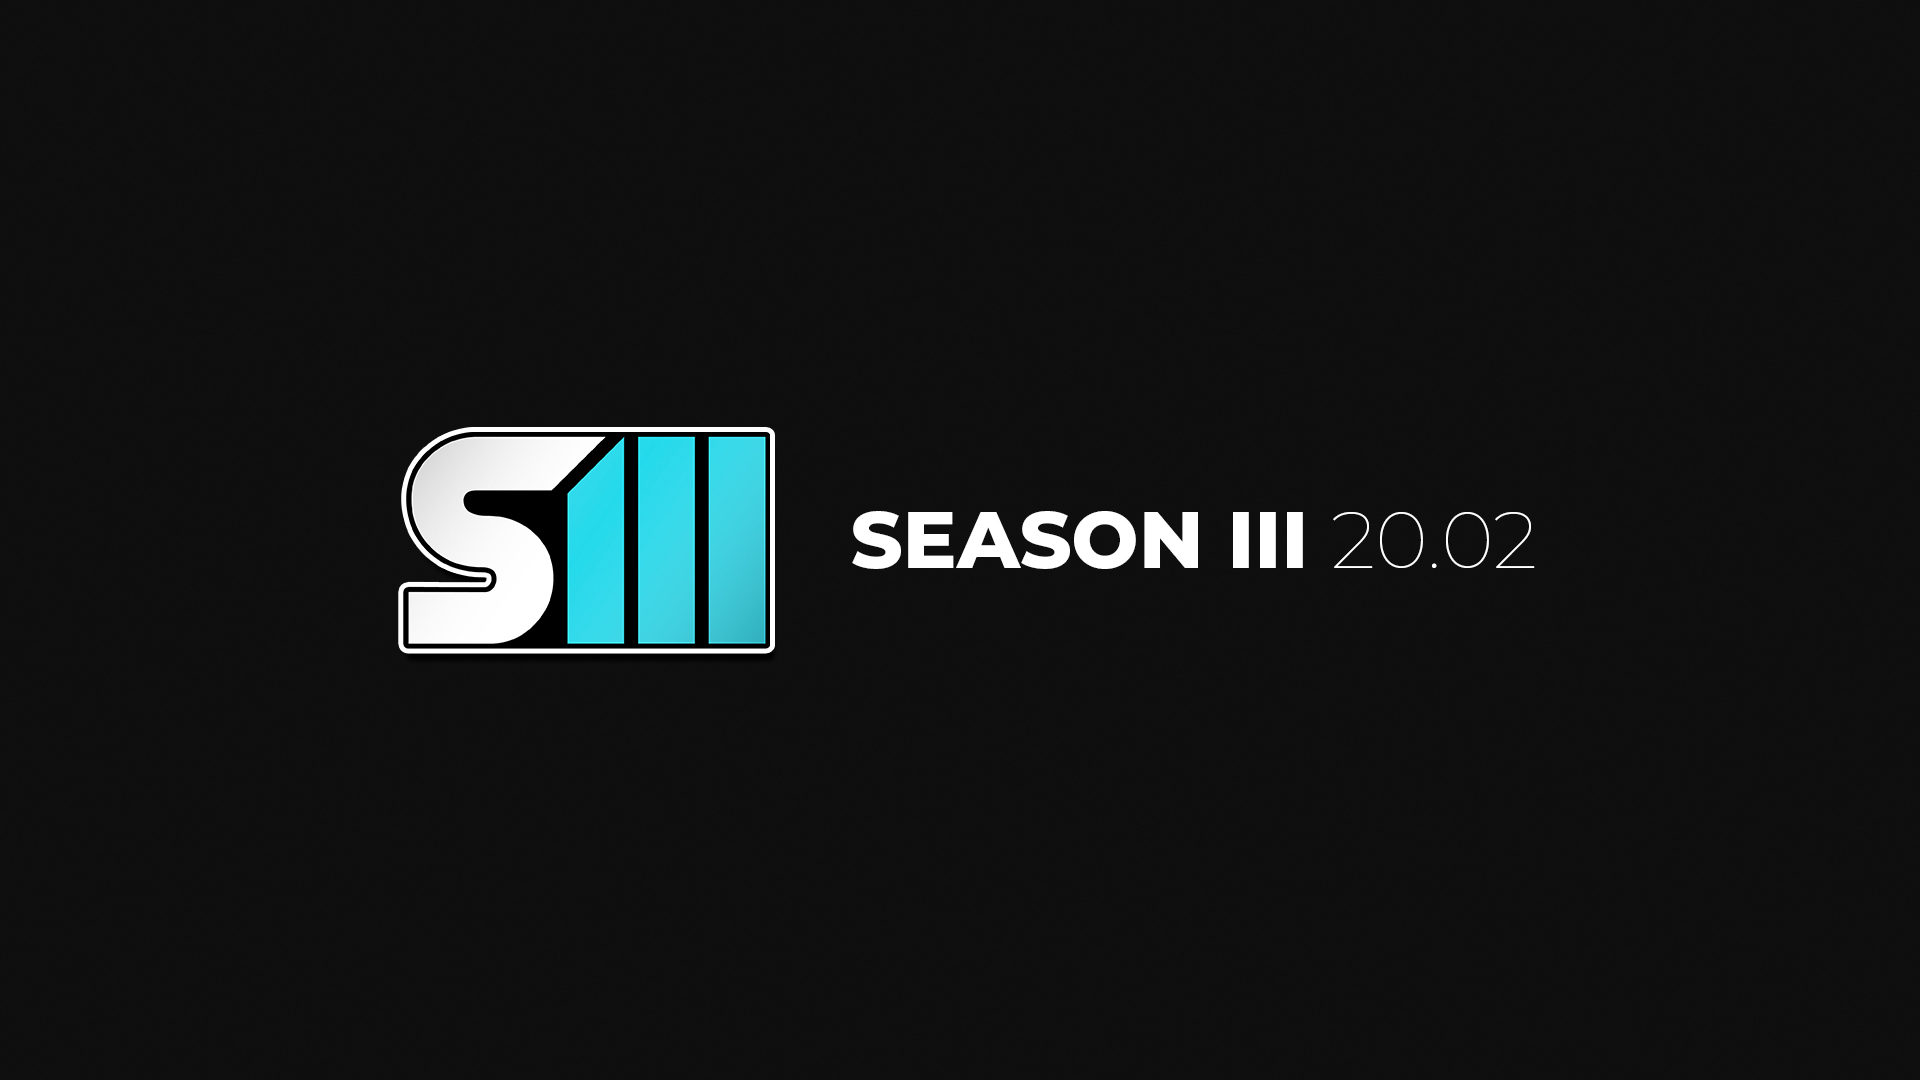 Season III - 20.02